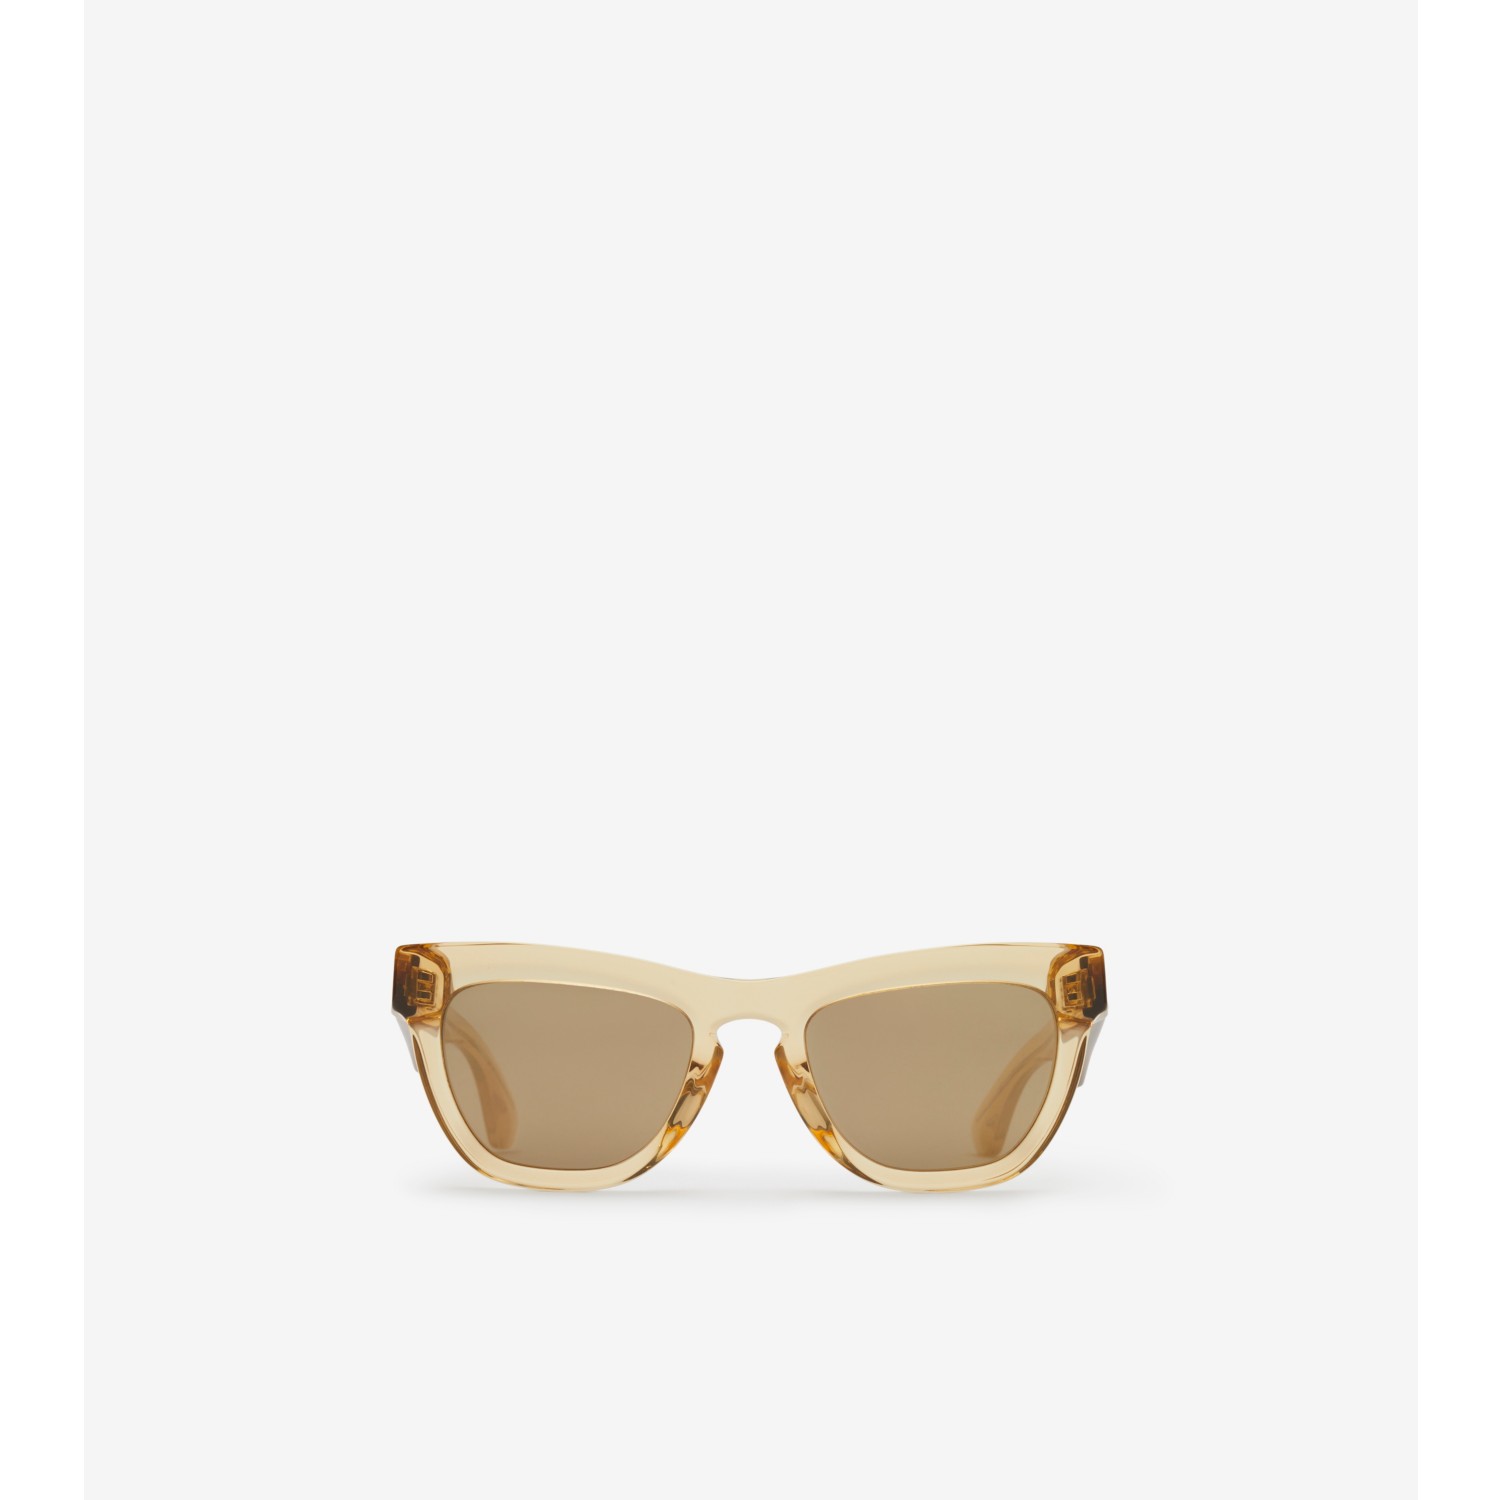 Arch Sunglasses